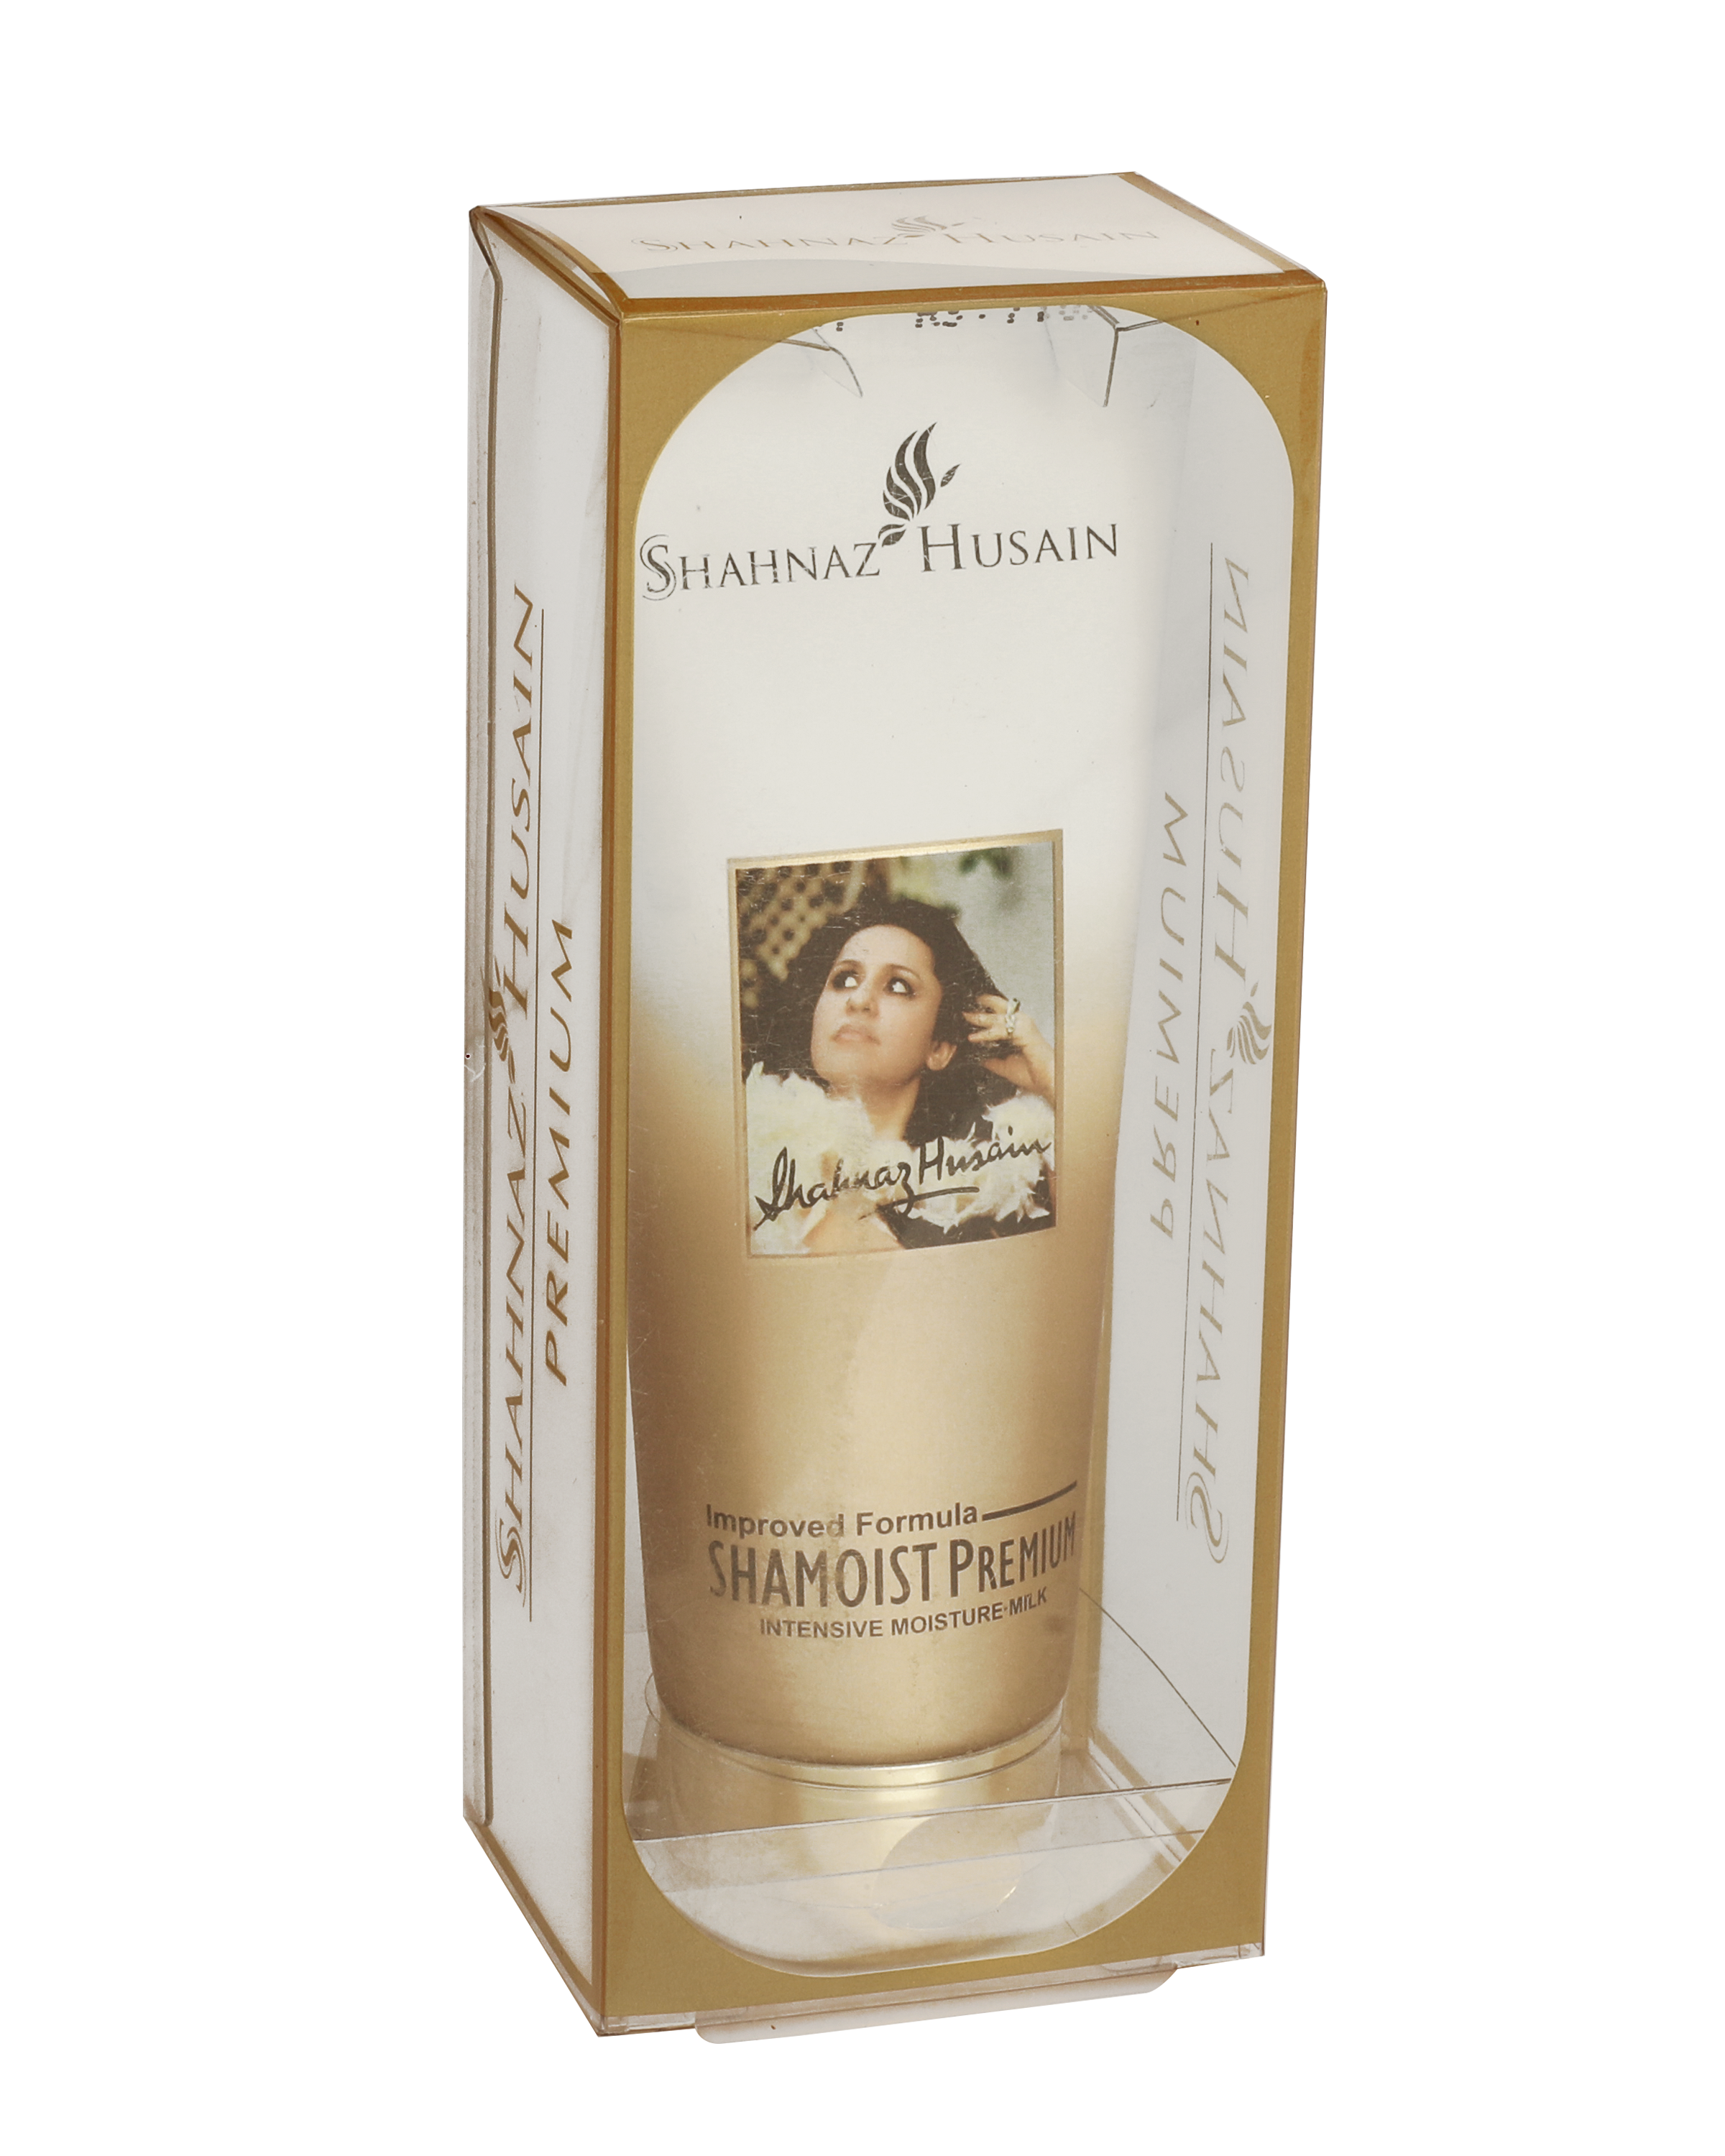 50g Shahnaz Husain Shamoist Premium intensive Moisture Milk